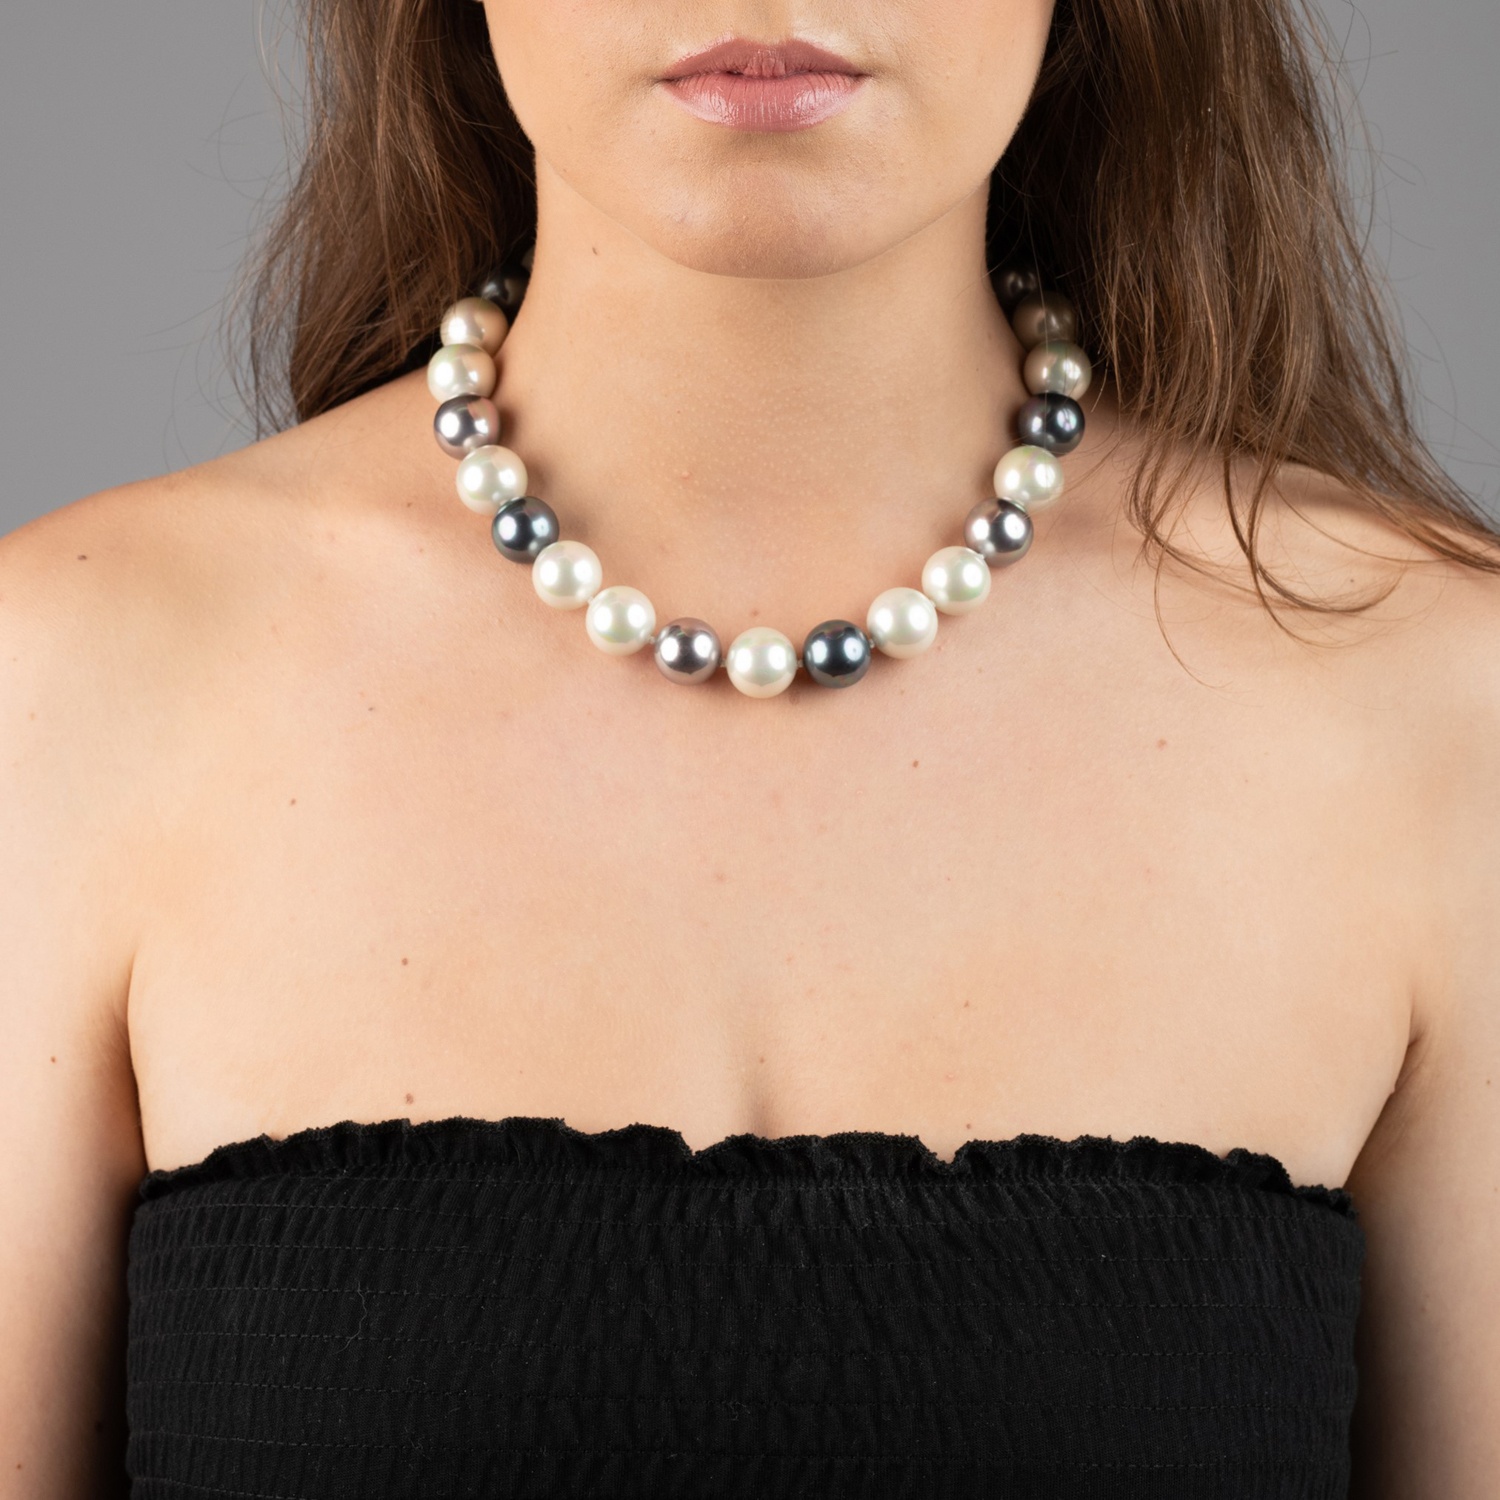 kKassische Perlenkette mit Perlen in Weiss, Grau und Schwarz 2